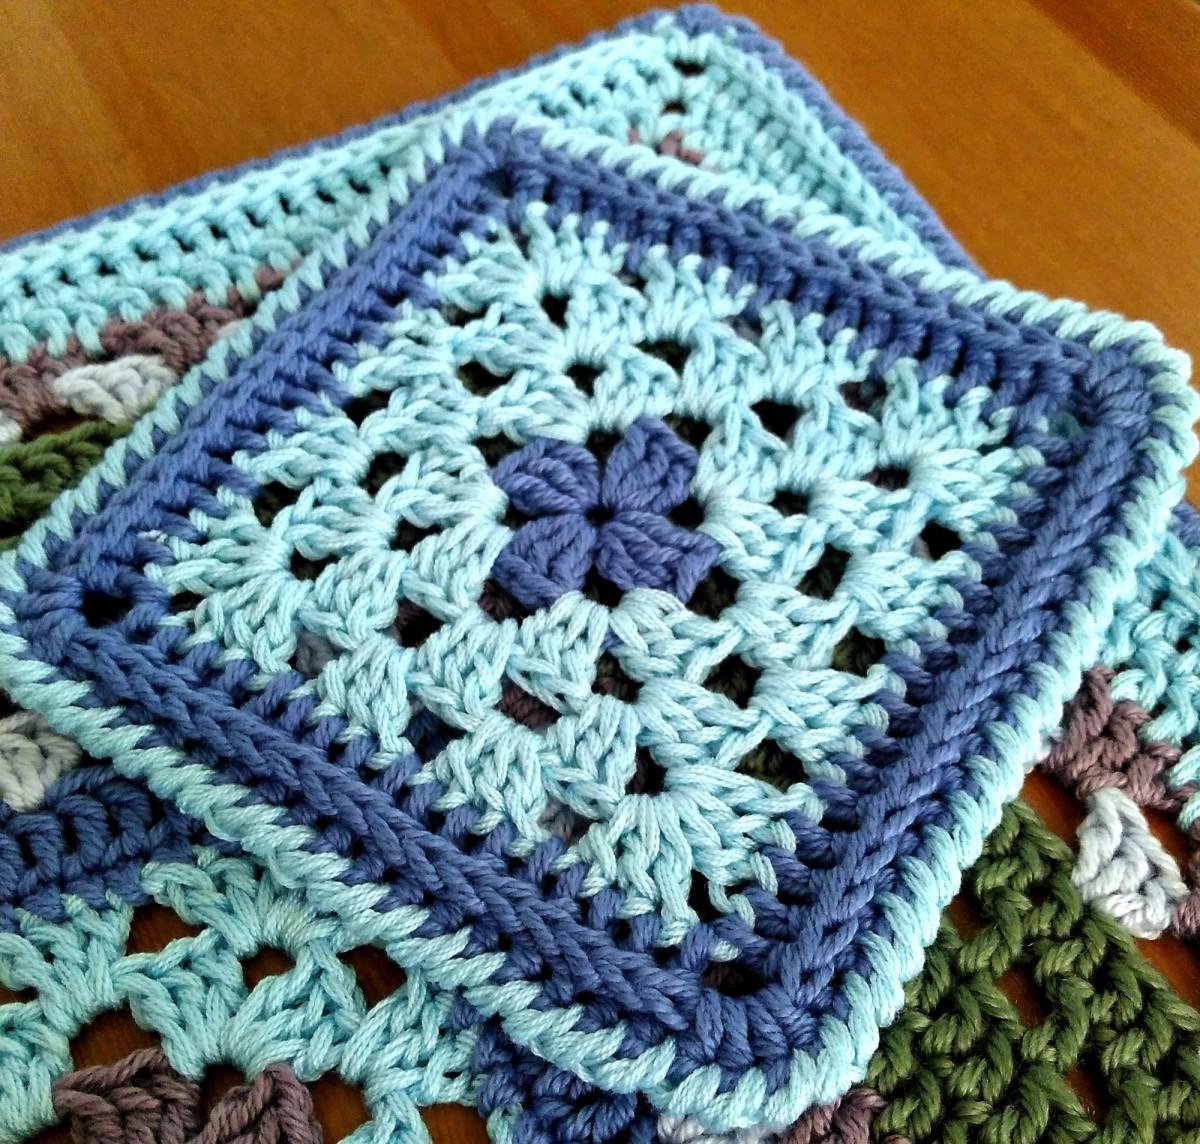 Granny square crochet coaster.